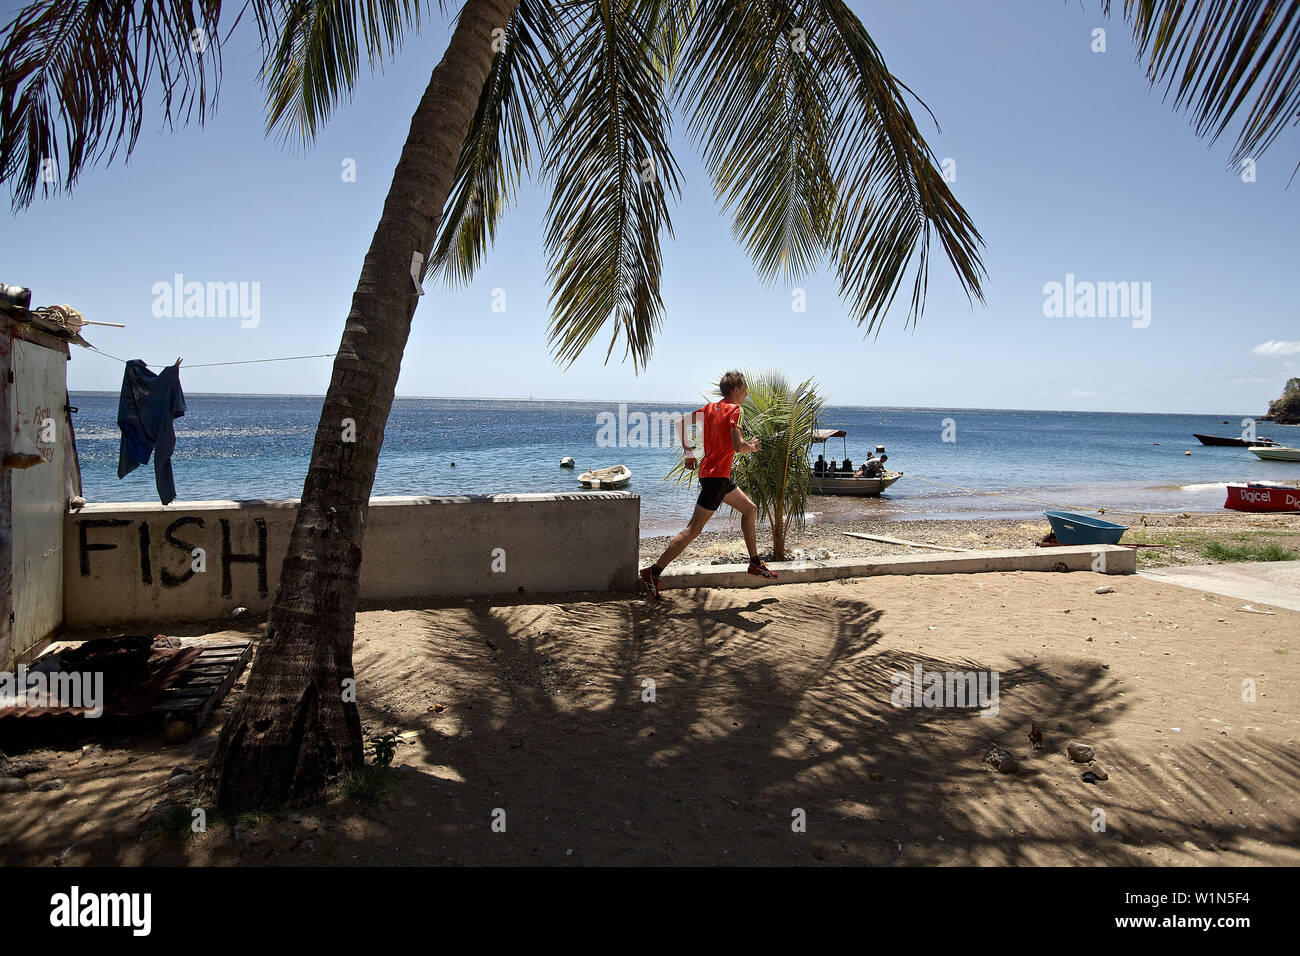 Jeune homme le long beach, Dominique, Lesser Antilles, Caribbean Banque D'Images